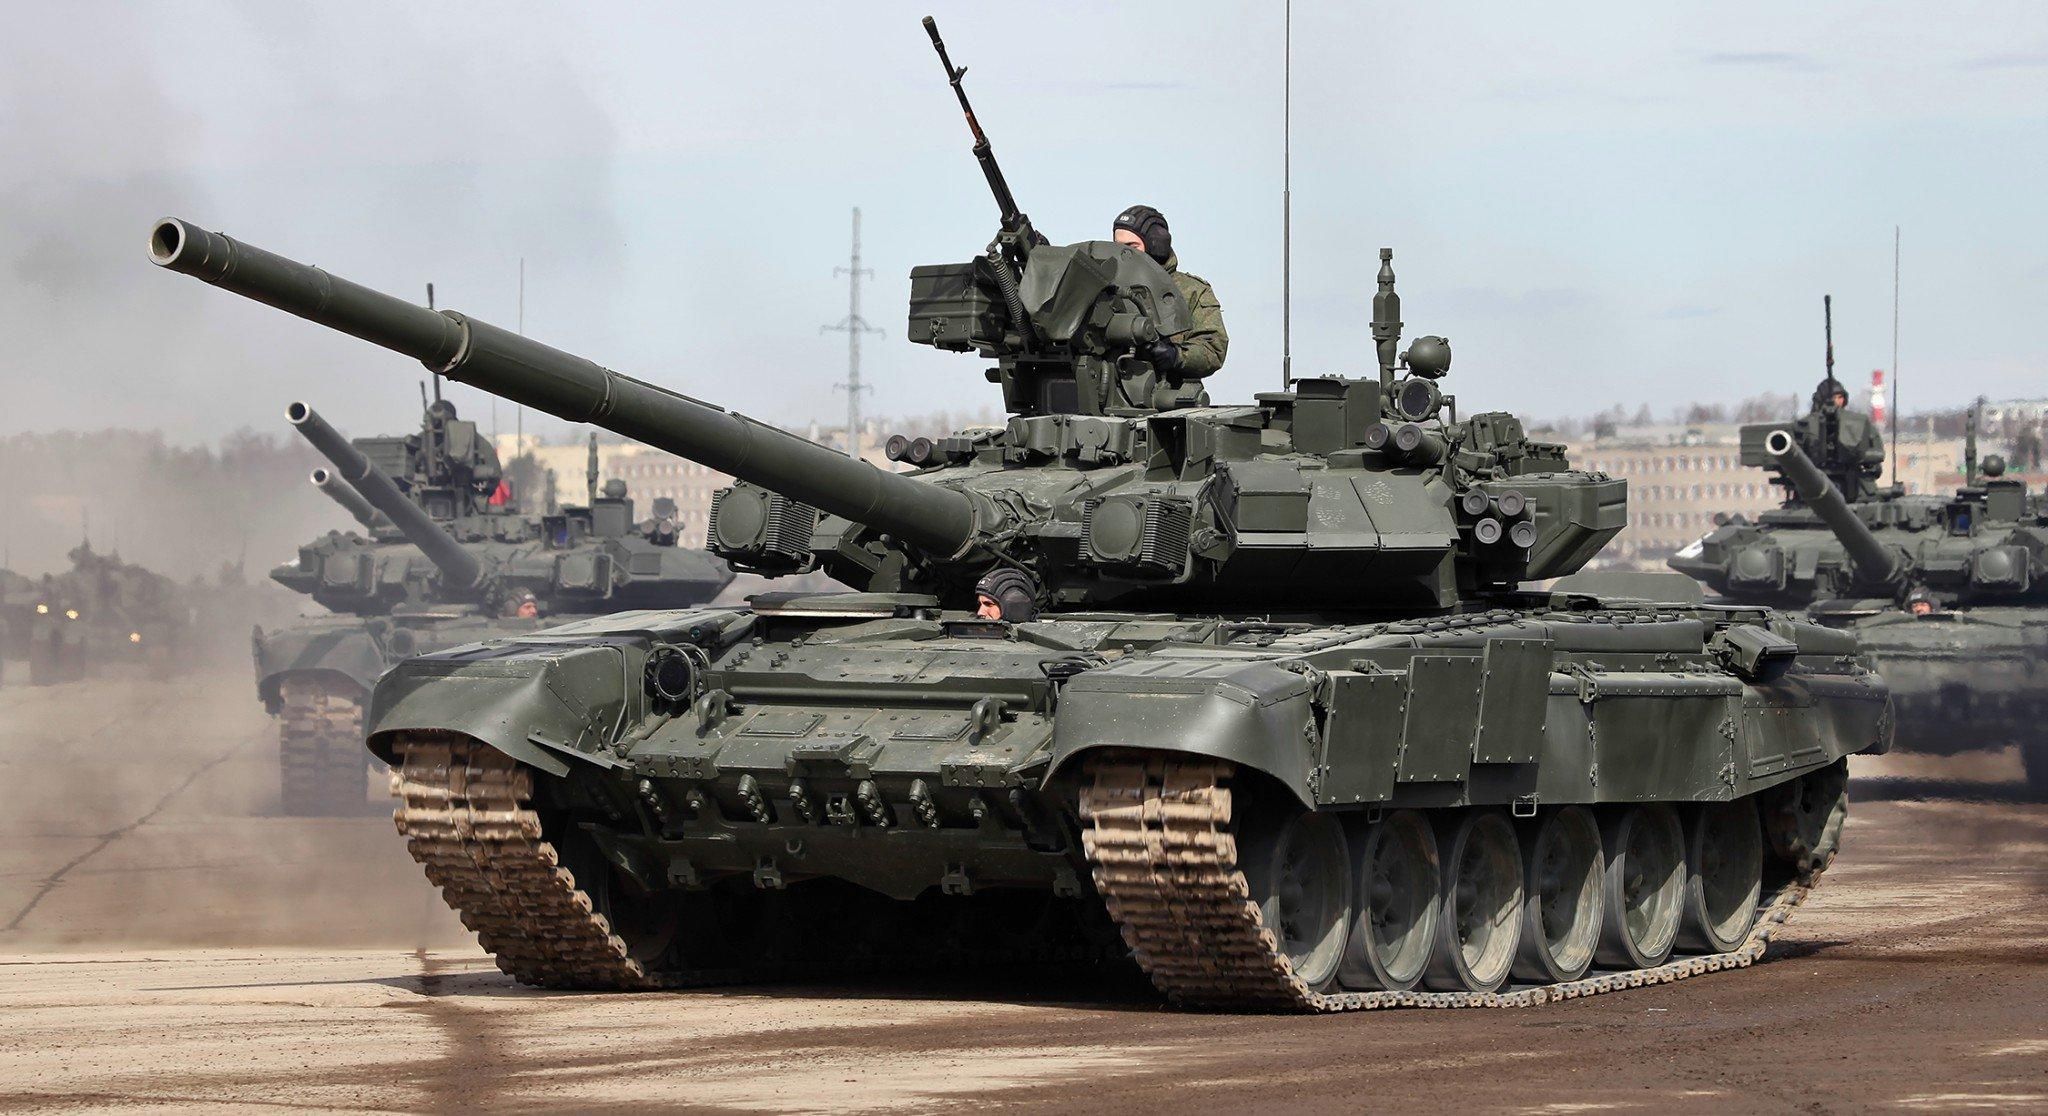 У россиян так много техники, что в некоторых городах возникают танковые пробки, – Зеленский